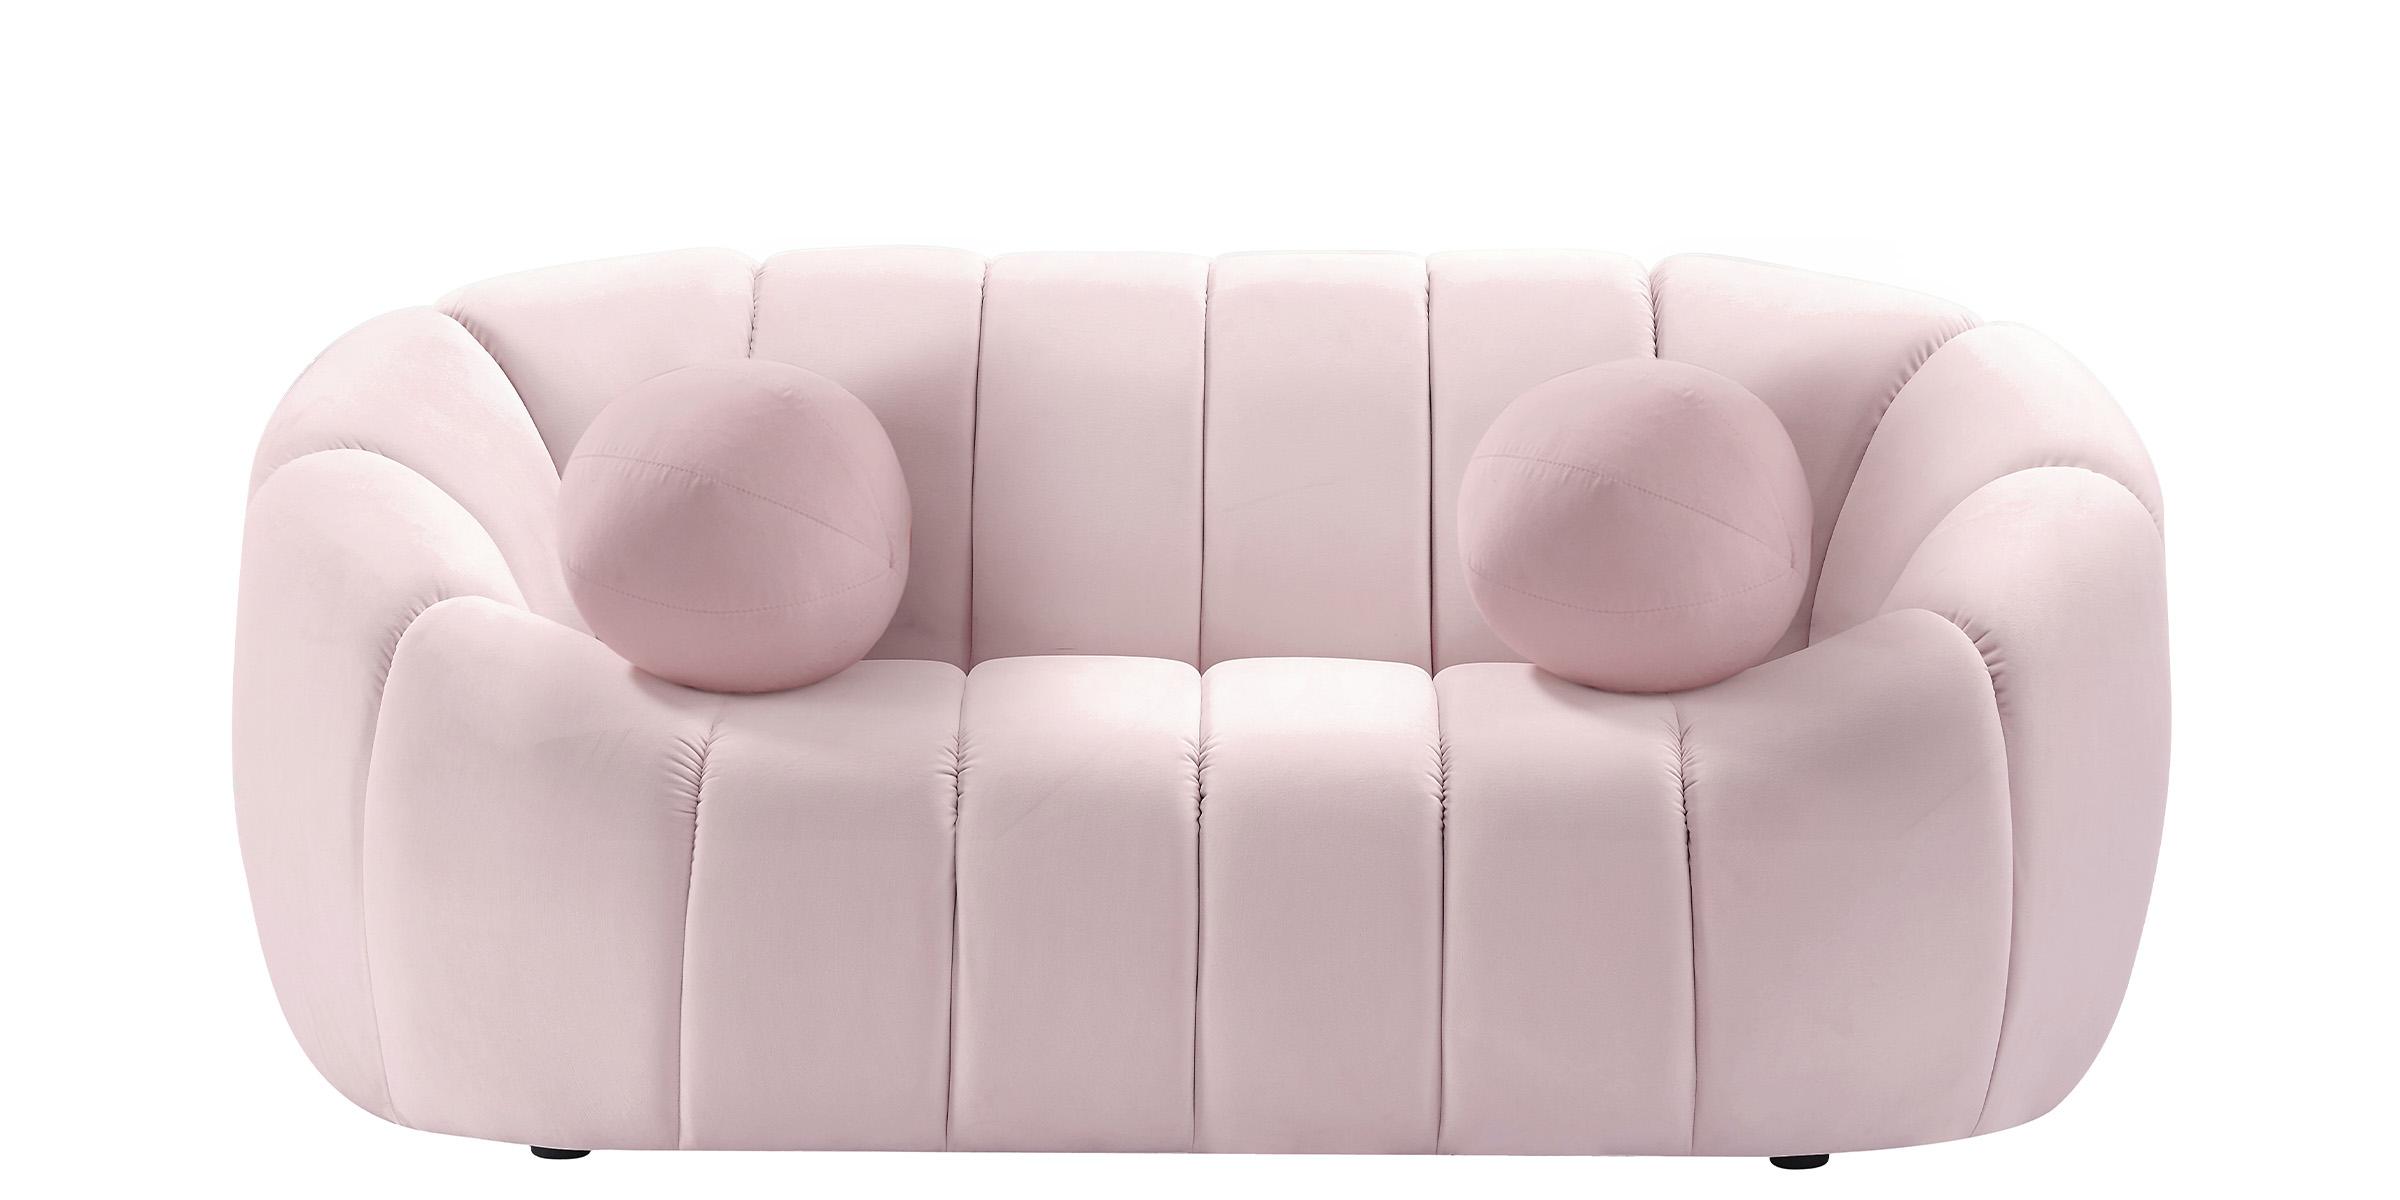 

    
613Pink-Set-3 Glam PINK Velvet Channel Tufted Sofa Set 3P ELIJAH 613Pink Meridian Contemporary
